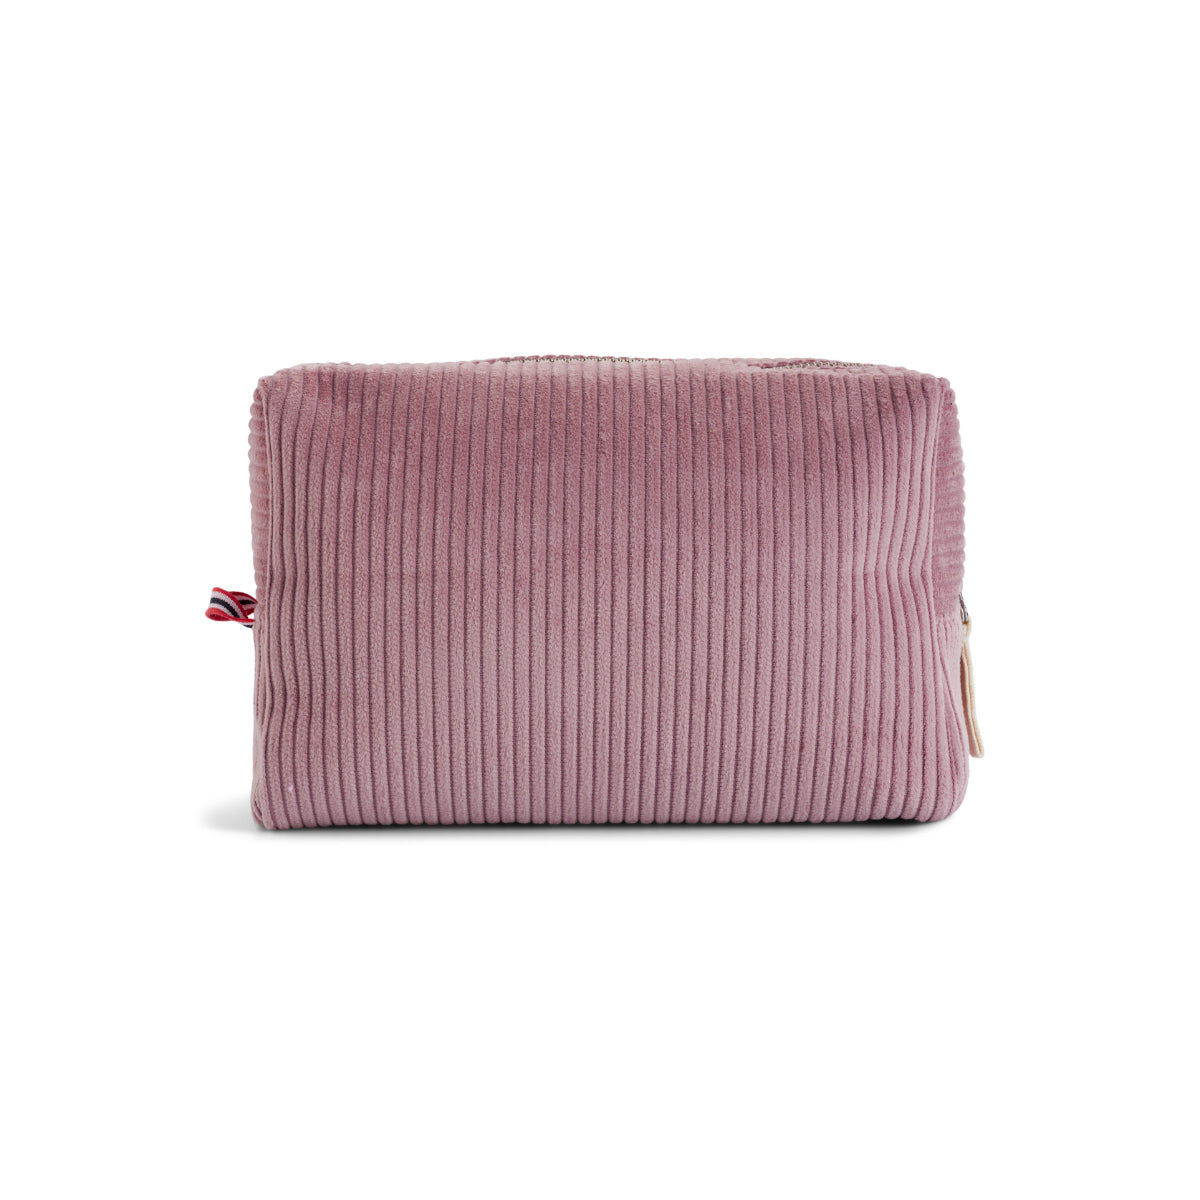 Amundsen Sports - Wash Bag Corduroy - Peony Pink